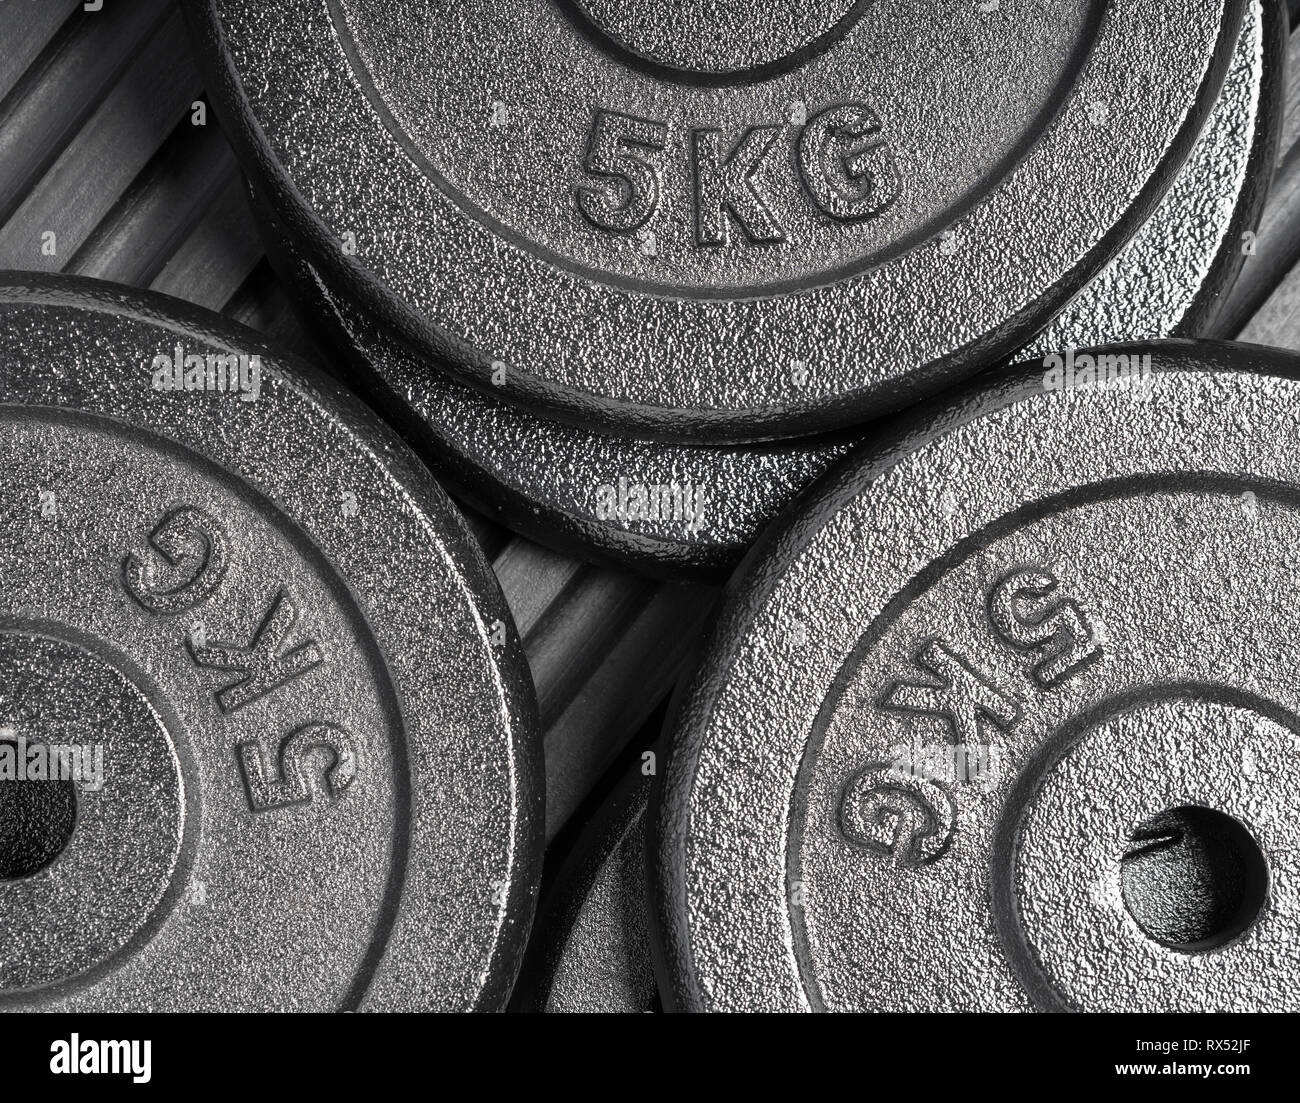 5 kg Hantelscheiben auf schwarzem Gummi Boden, innen, ein Krafttraining / Bodybuilding Gewichtheben gym Stockfoto